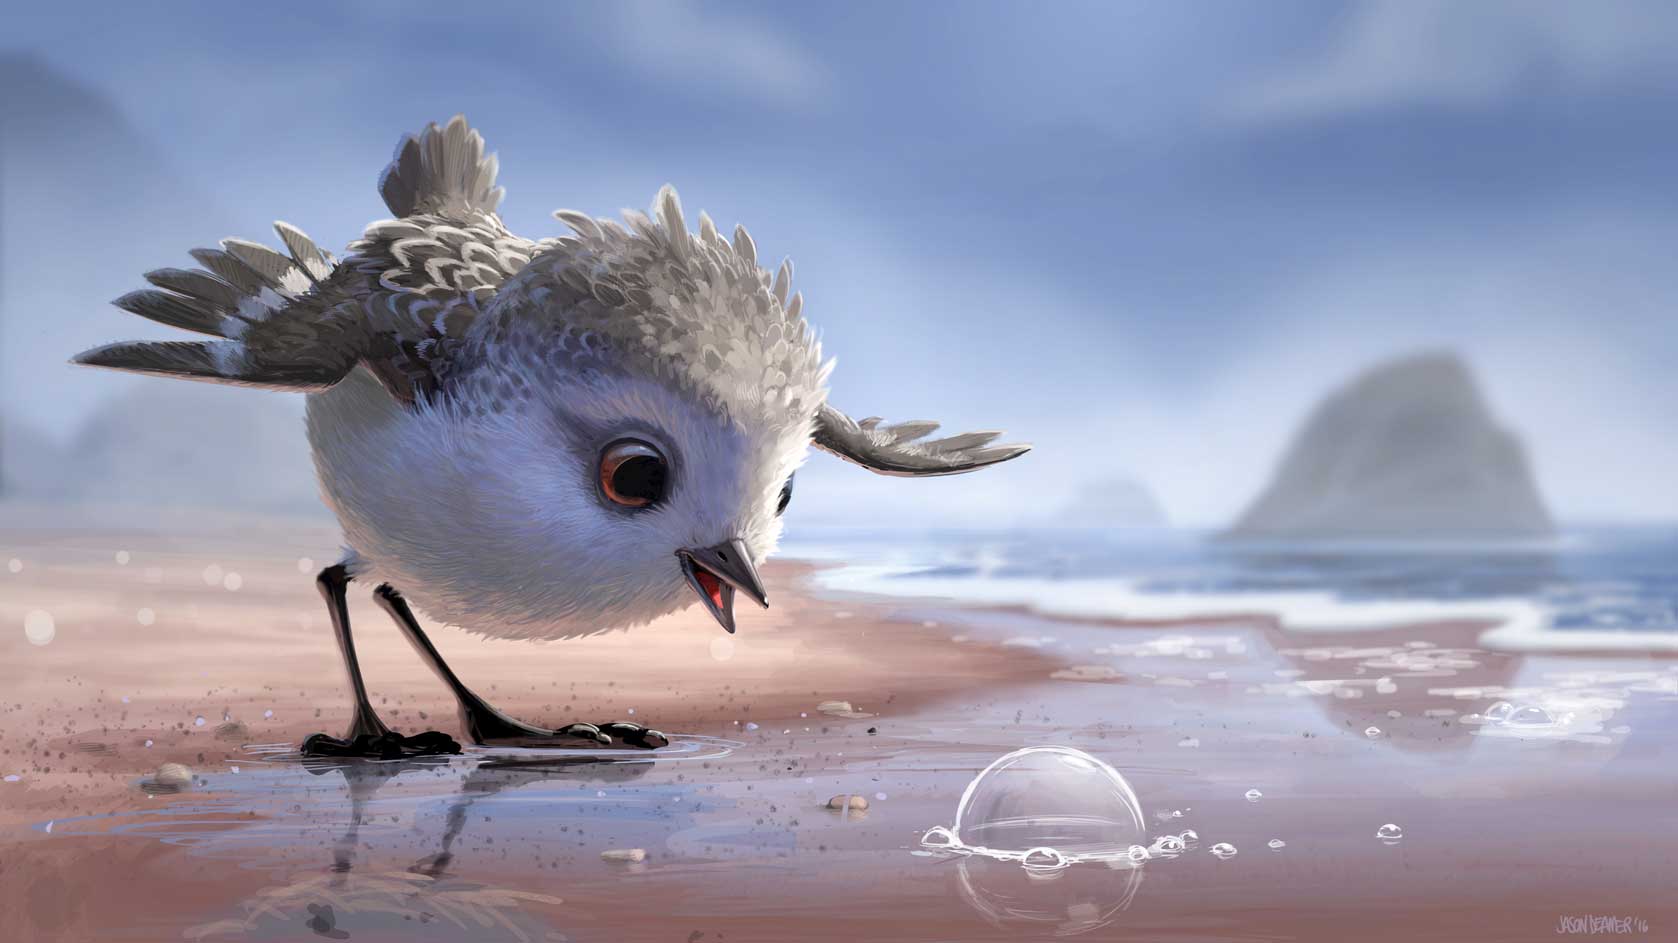 《海底奇兵 2》（Finding Dory）6 月在美國上映，數星期來不斷破票房紀錄，目前已是美國最高票房的 Pixar 動畫，截至現時（7 月 12 日），更是北美地區最高票房的動畫第 2 位，僅次於《史力加 2》，這個紀錄相信亦好快就破（全球最賣座動畫就當然係「Let It Go」《魔雪奇緣》拋離）。話題性之高，很難不買飛入場好奇一下，如果票房不是足夠的理由，以下還有 9 個小資料，畀大家知道《海底奇兵 2》有幾吸引。